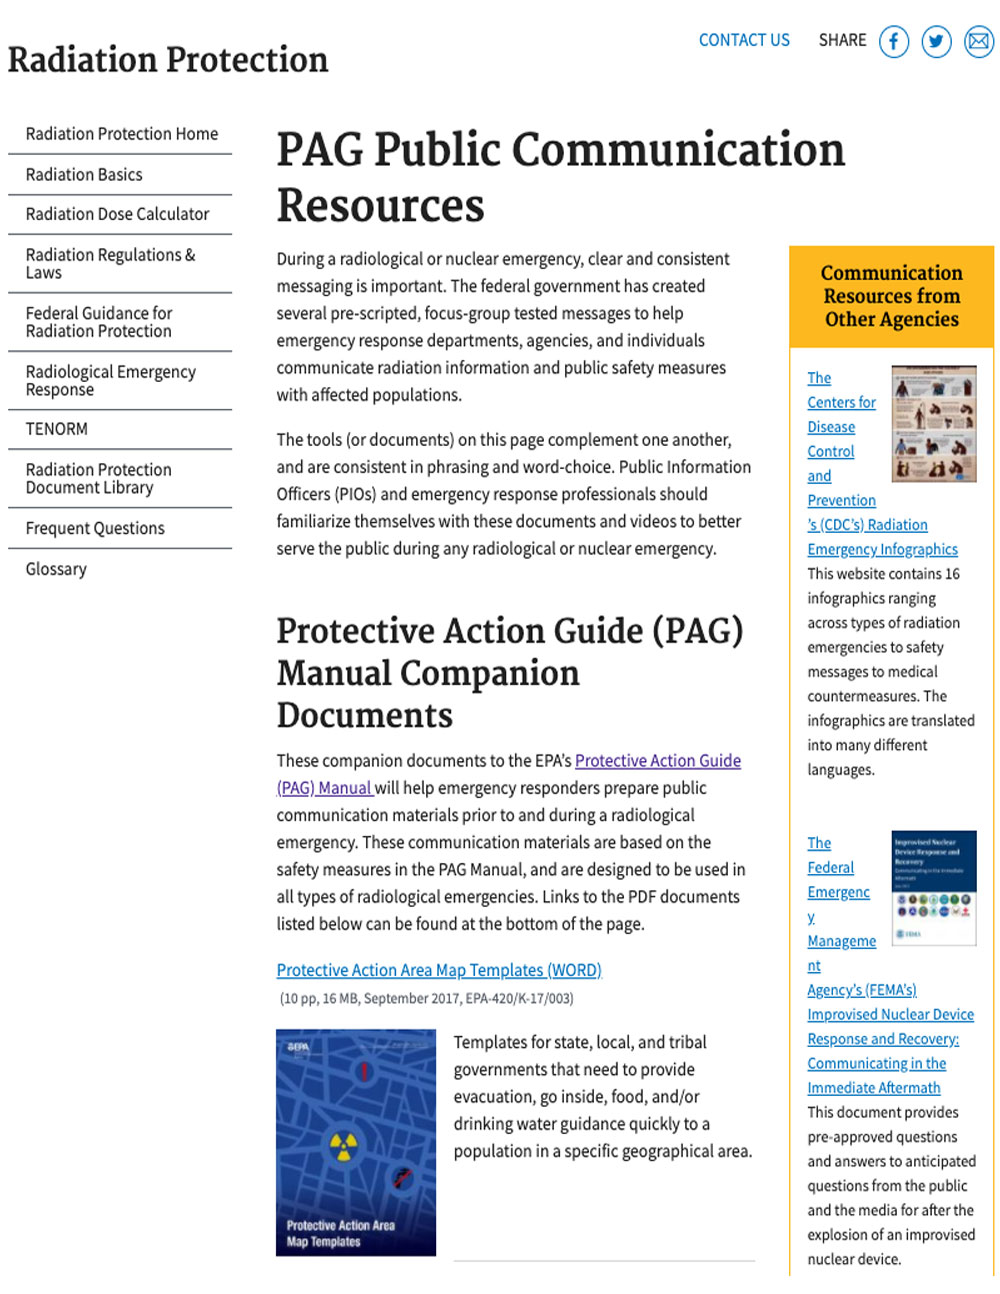 EPA PAG Public Communication Resources website